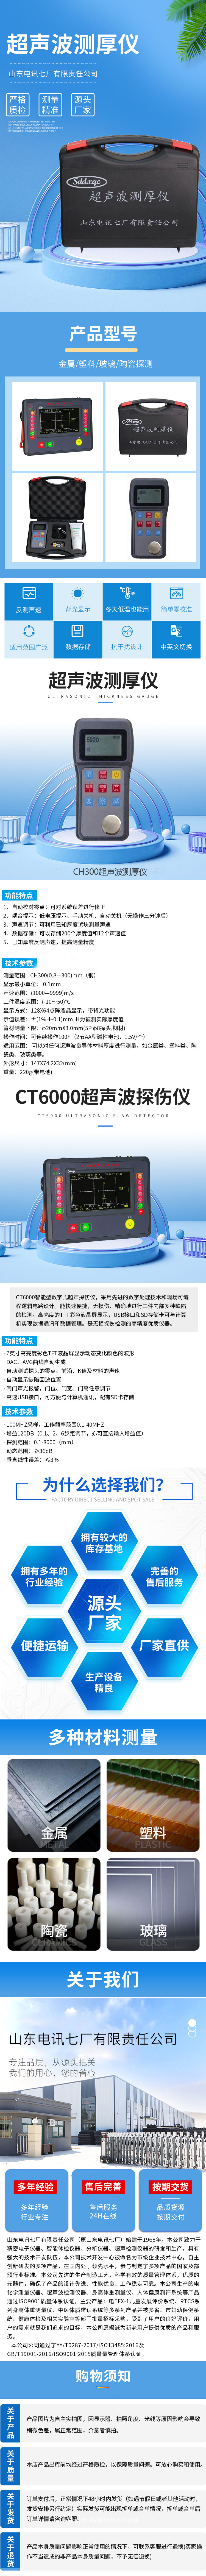 超声波(CH300)